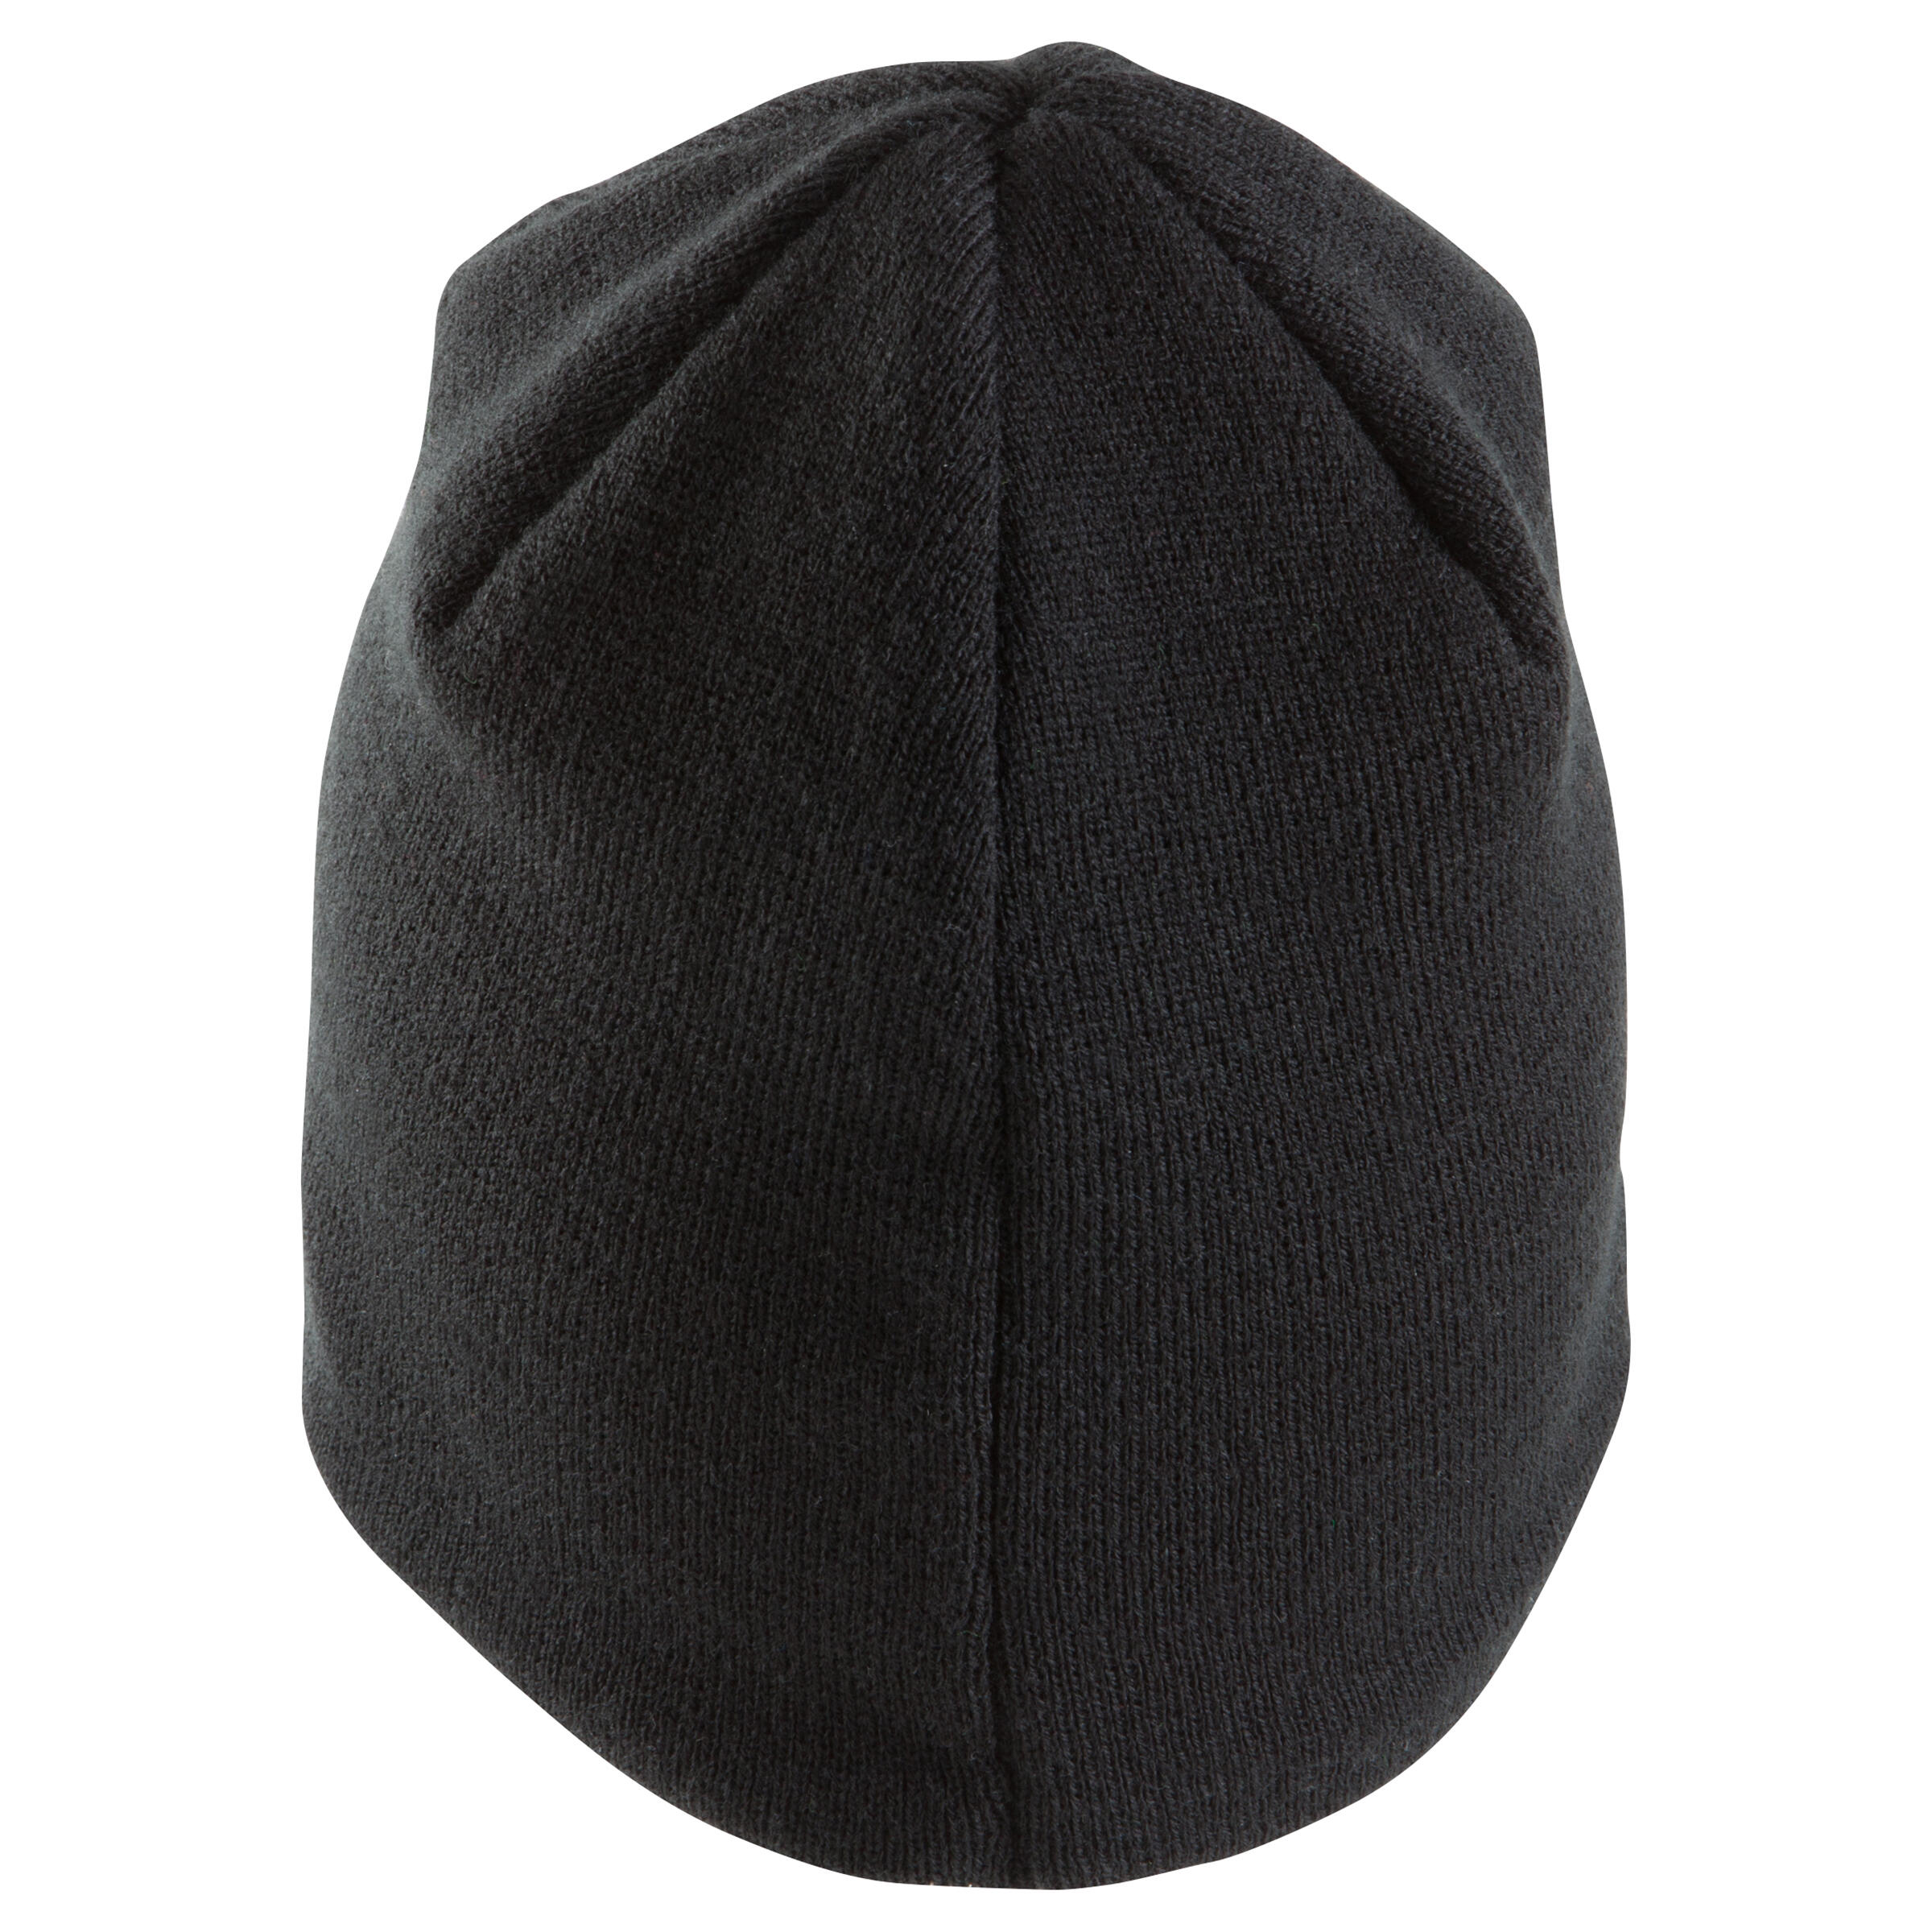 Keepwarm Kids' Fleece-Lined Hat - Black 4/8